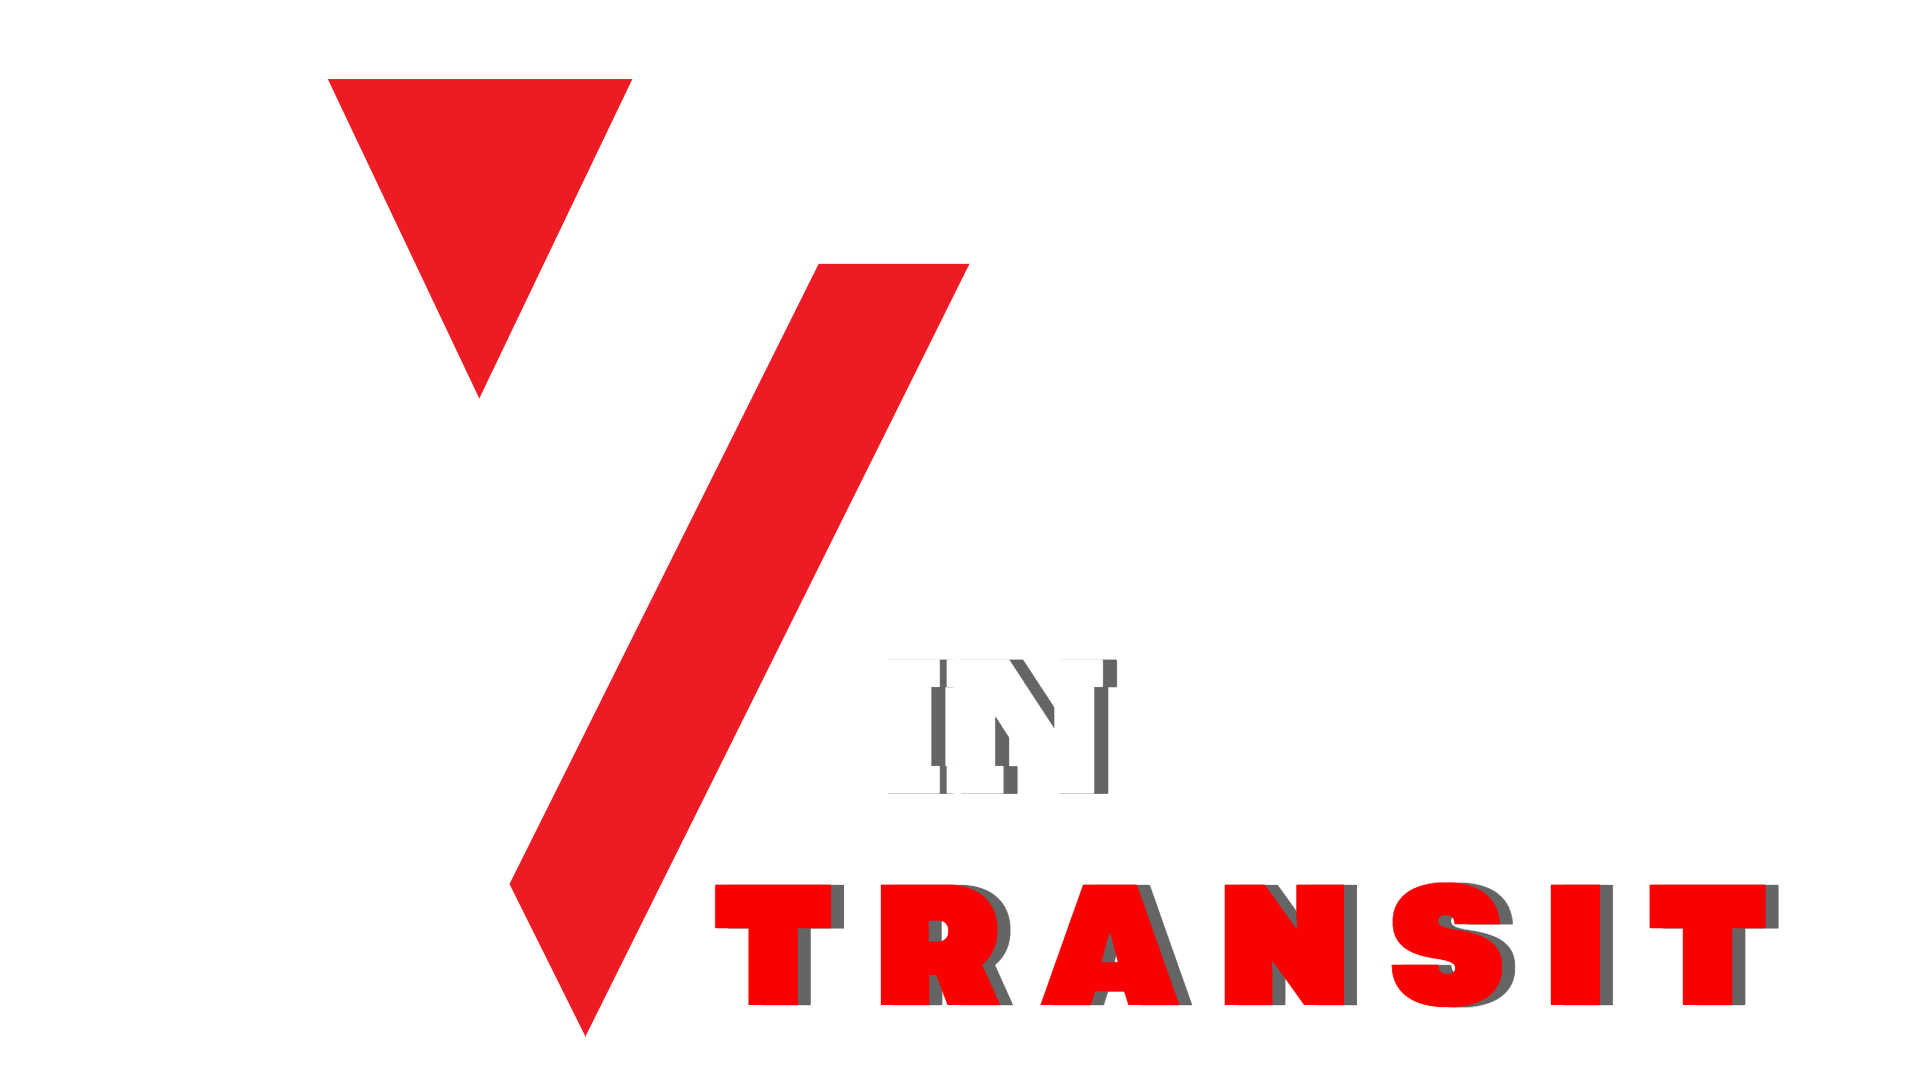 VIP In Transit